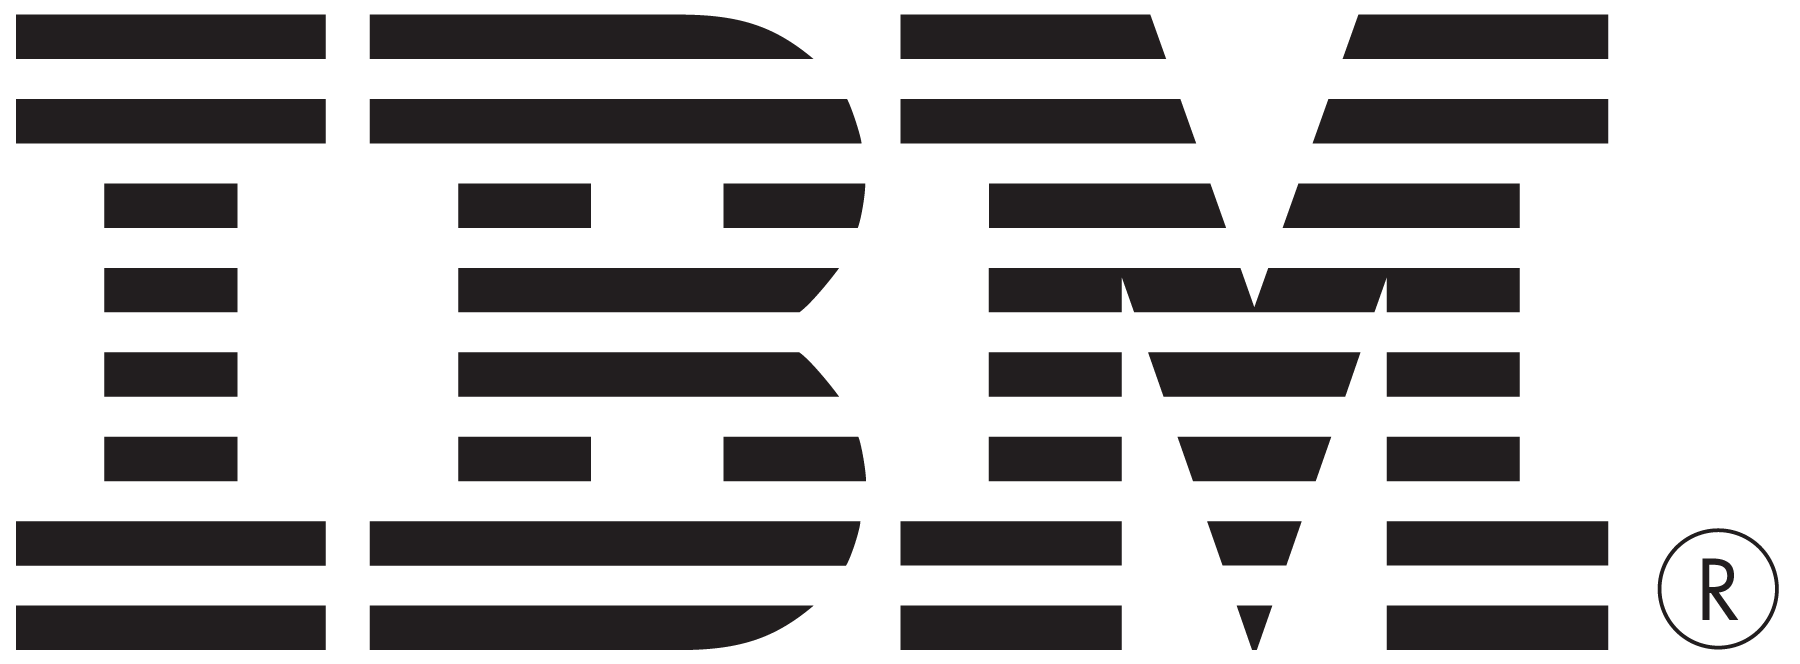 IBM Black Logo - IBM logos PNG images free download, IBM logo PNG